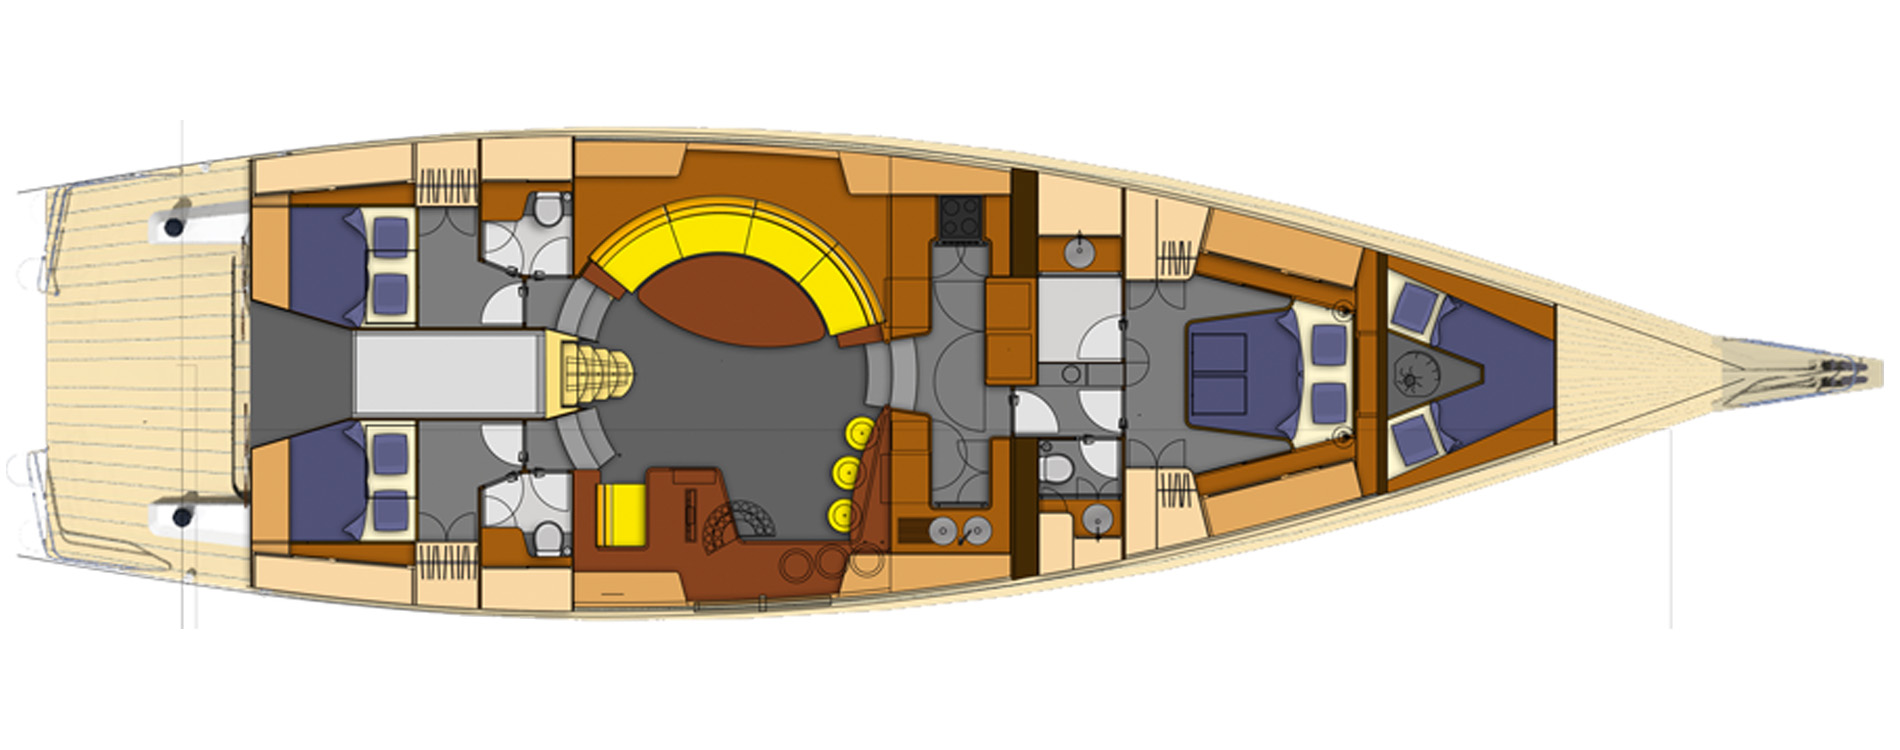 Garcia70.2-Vincent Lebailly-Architecture navale-voilier sur mesure